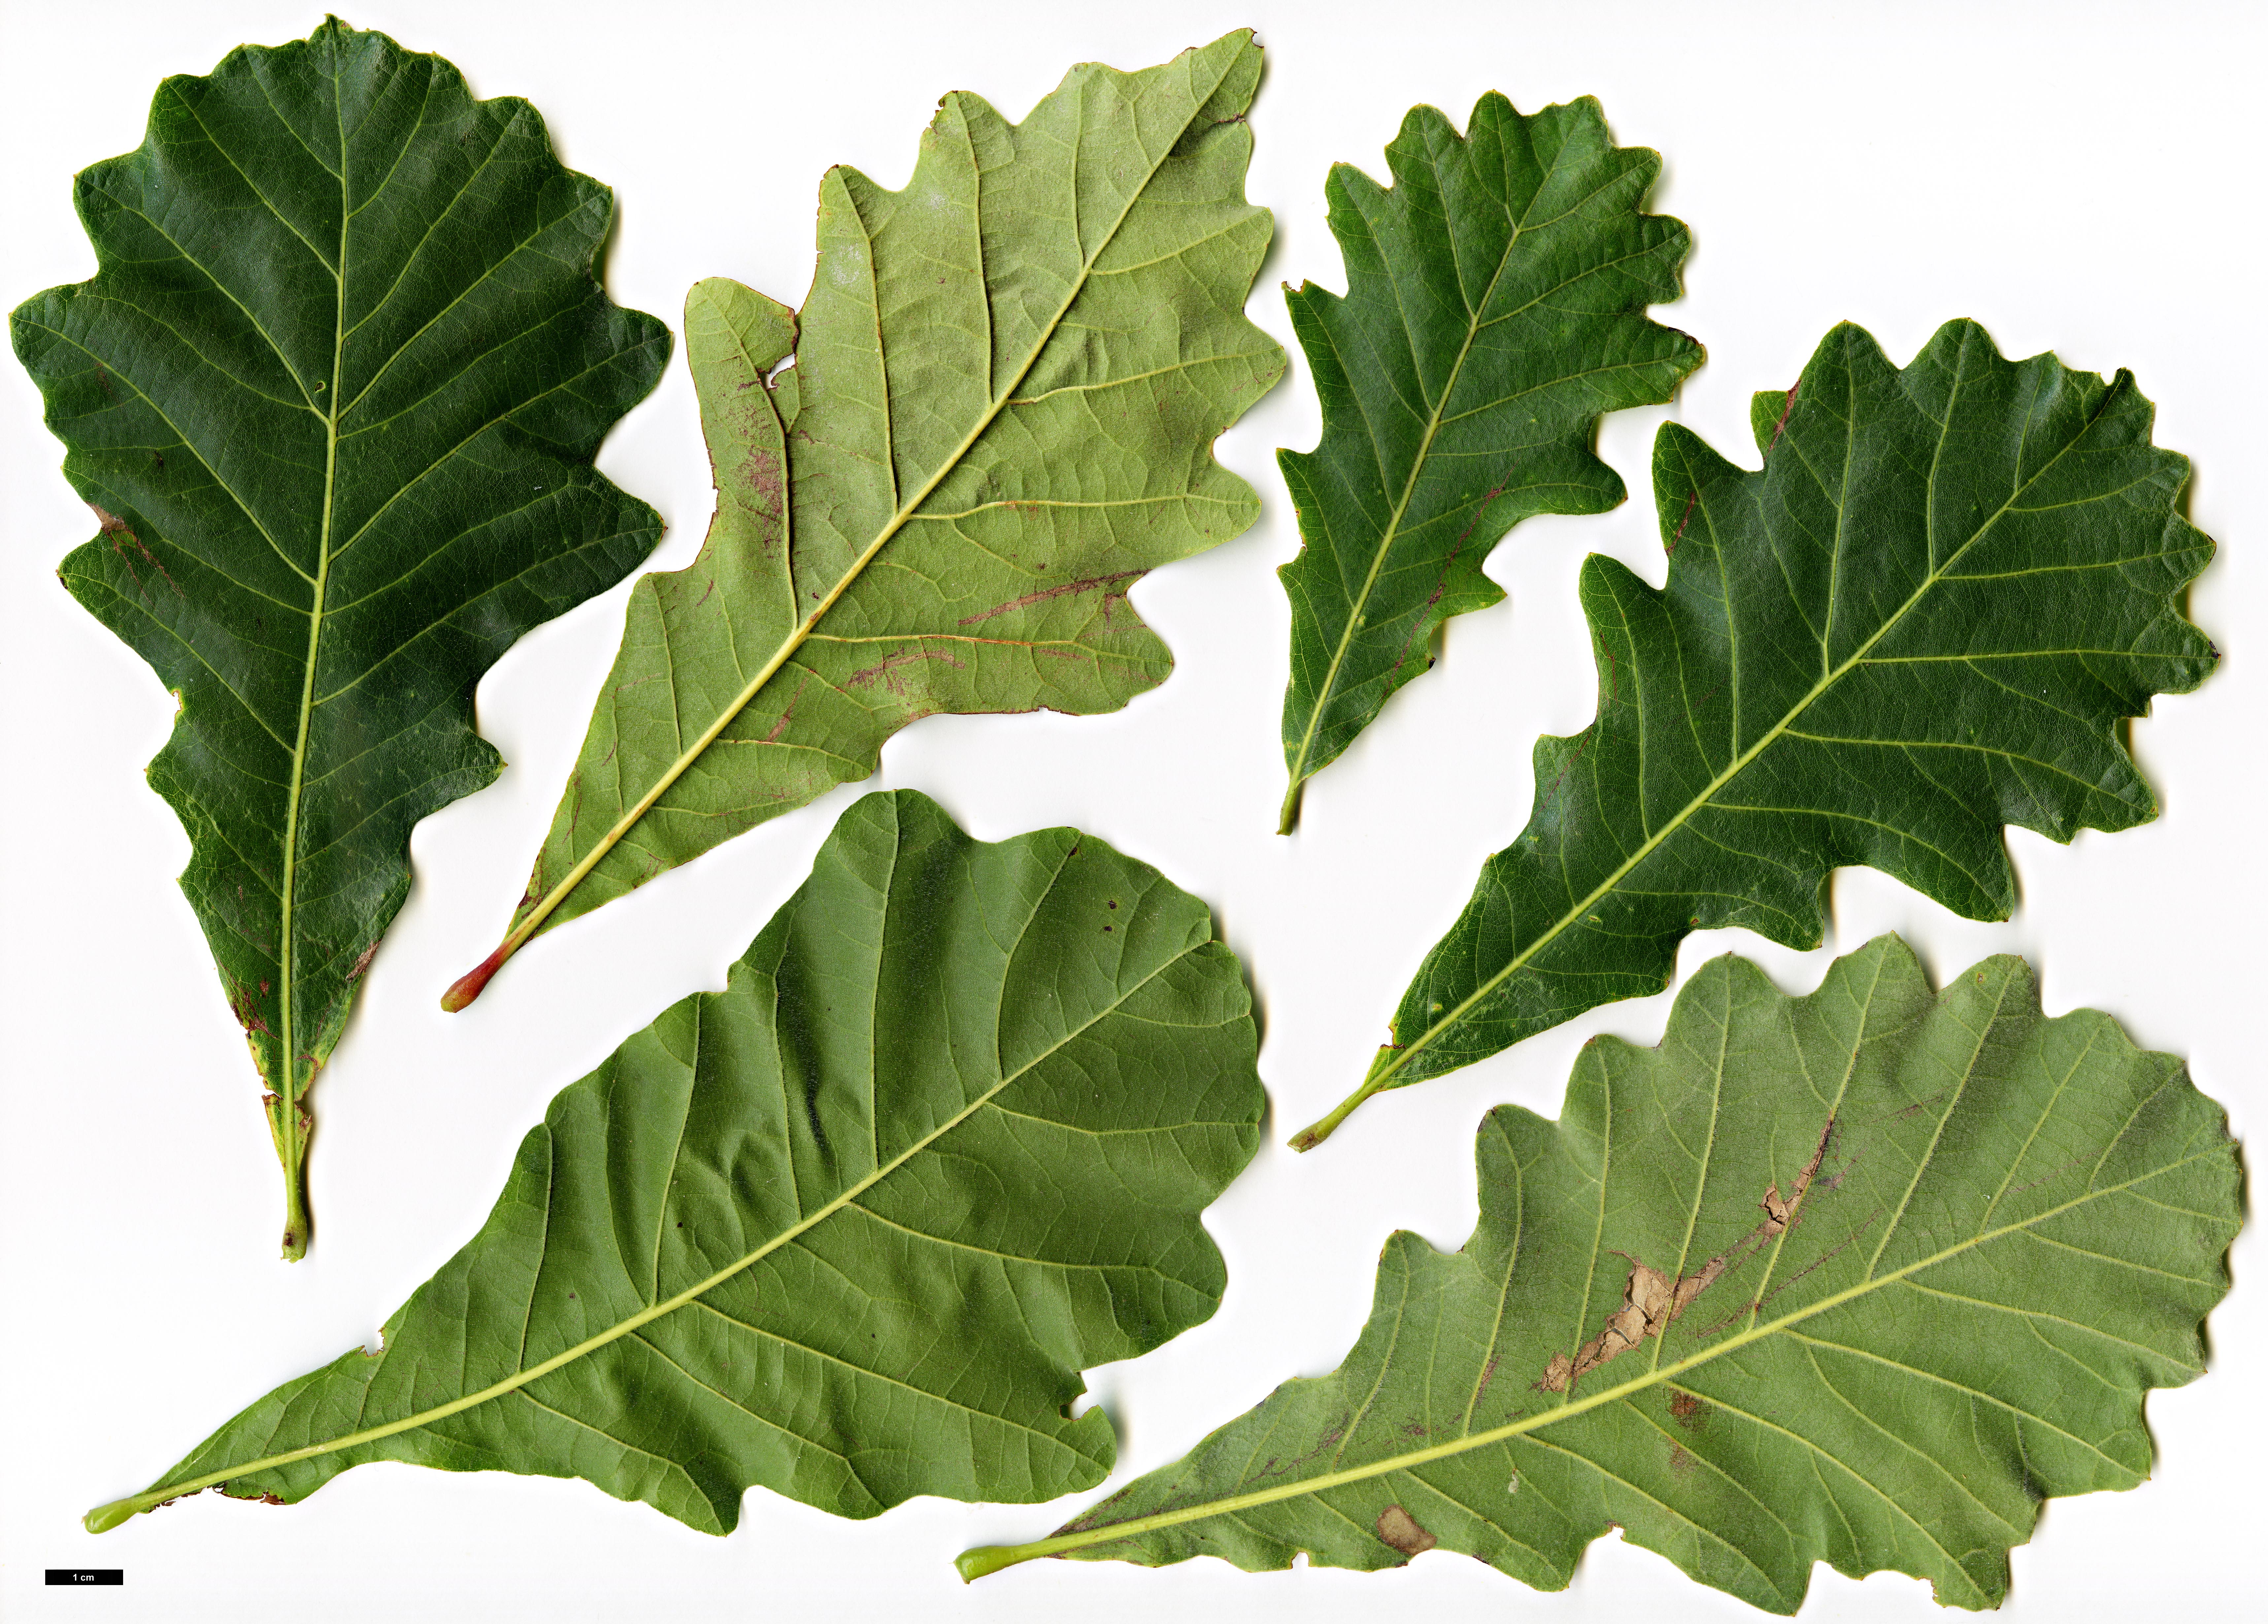 High resolution image: Family: Fagaceae - Genus: Quercus - Taxon: ×humidicola (Q.bicolor × Q.lyrata)